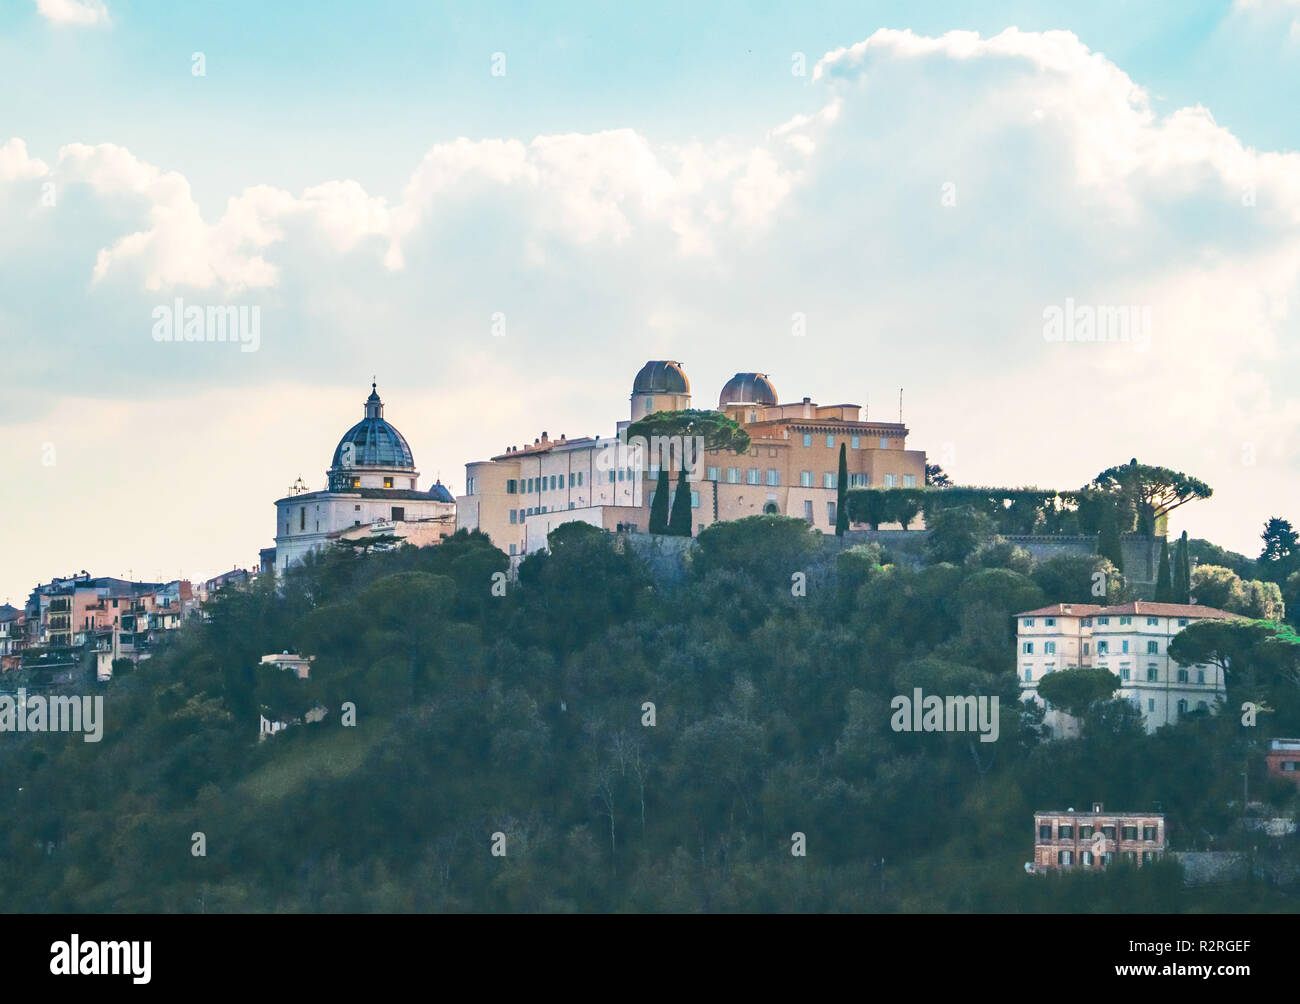 Castel Gandolfo (Italia) - una suggestiva cittadina nella città metropolitana di Roma, sul lago Albano, famosa per essere stata la residenza estiva del Papa. Foto Stock